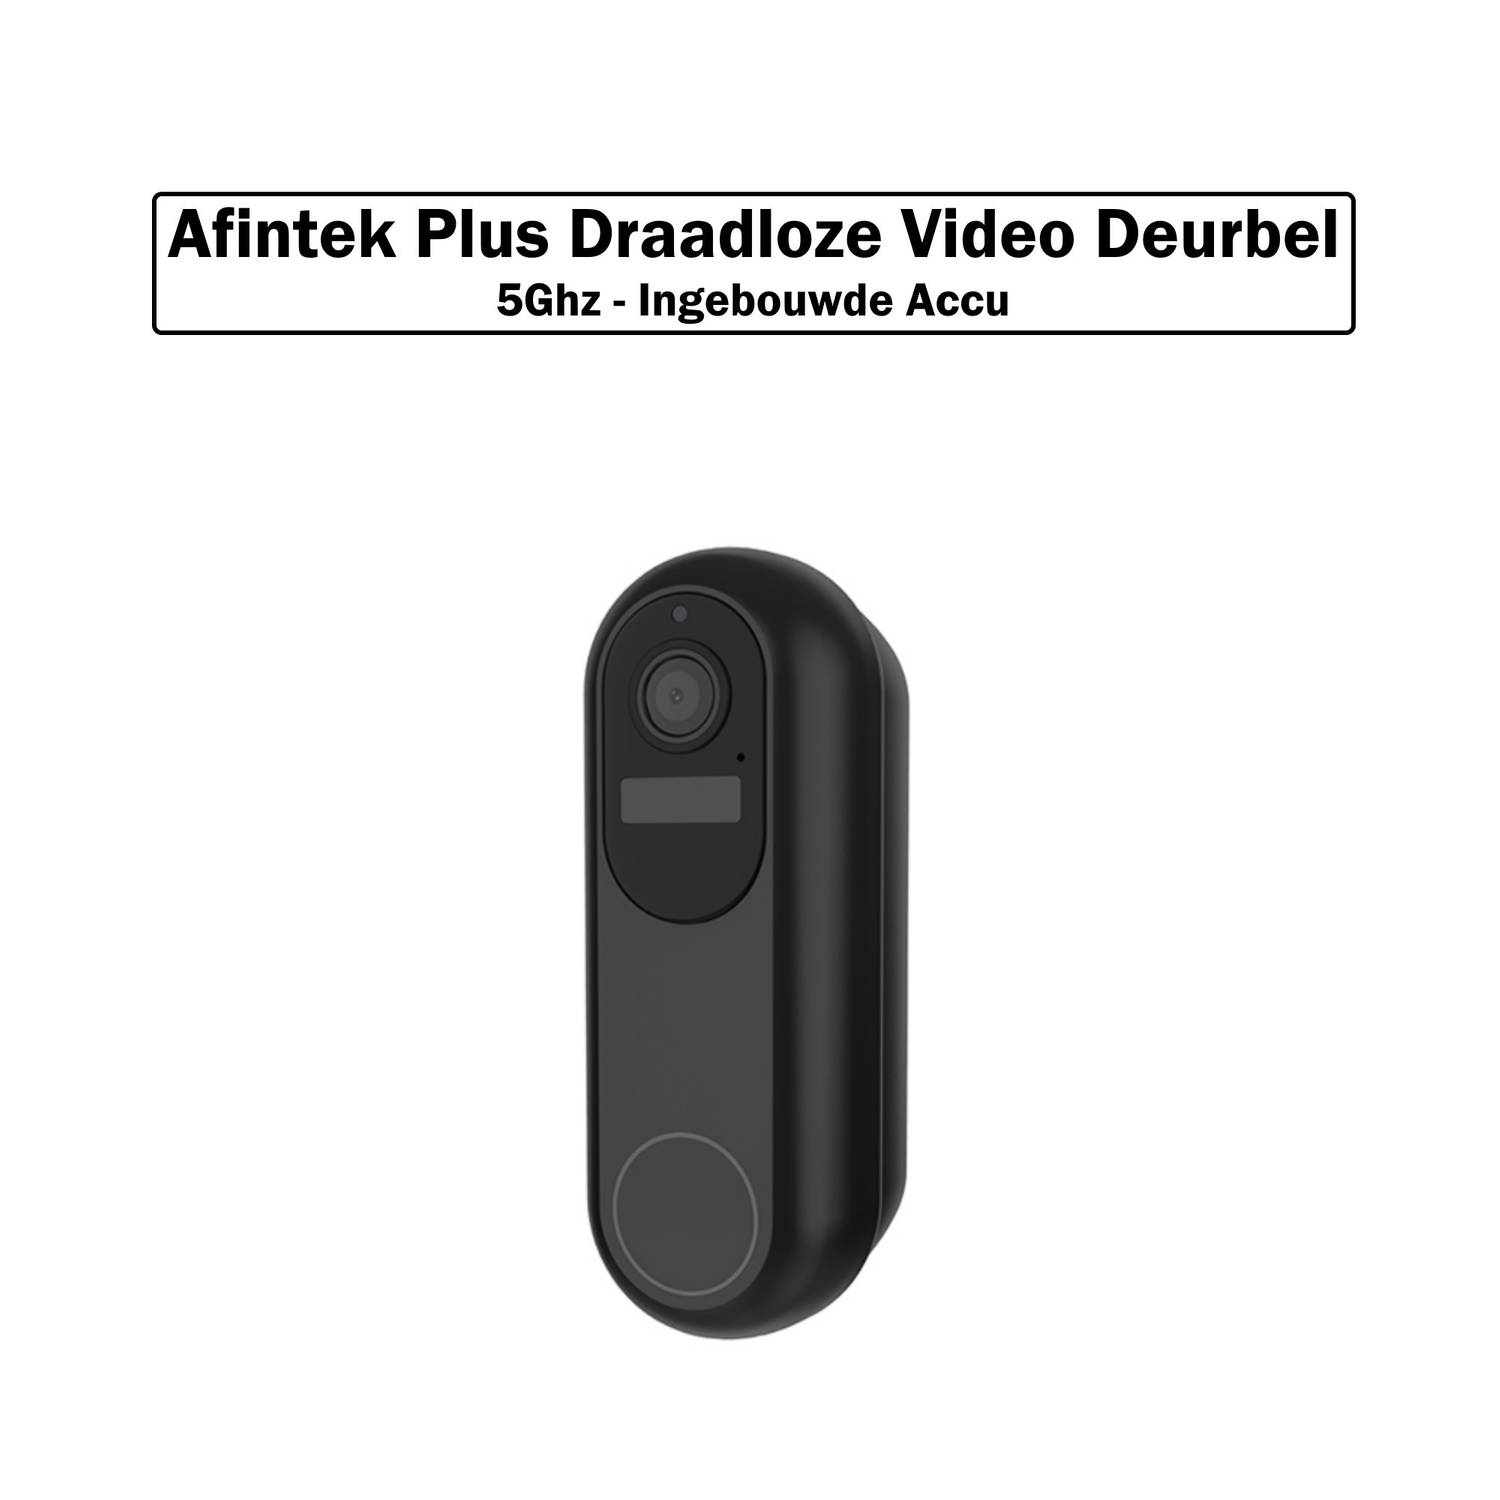 AFINTEK Plus Draadloze Video Deurbel - Deurbel Met Camera - 5Ghz - Inclusief Chime